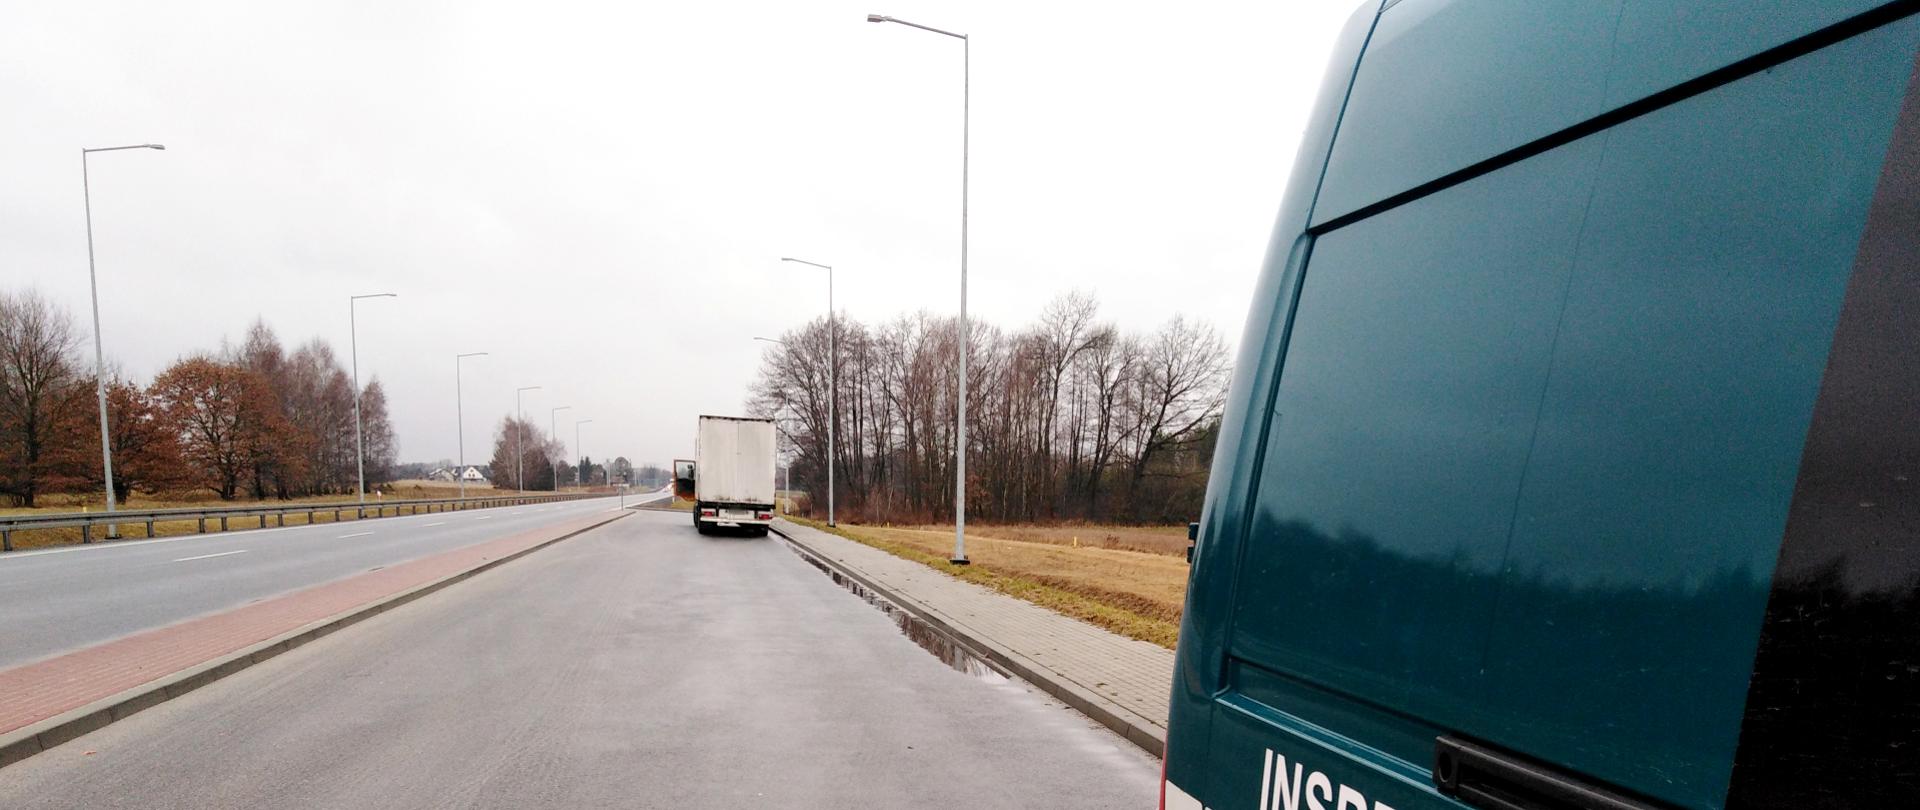 Zatrzymana ciężarówka, w której inspektorzy z WITD w Krakowie udaremnili manipulowanie czasem pracy kierowcy. Na pierwszym planie furgon ITD, w tle skontrolowany pojazd stojący na przydrożnym parkingu.